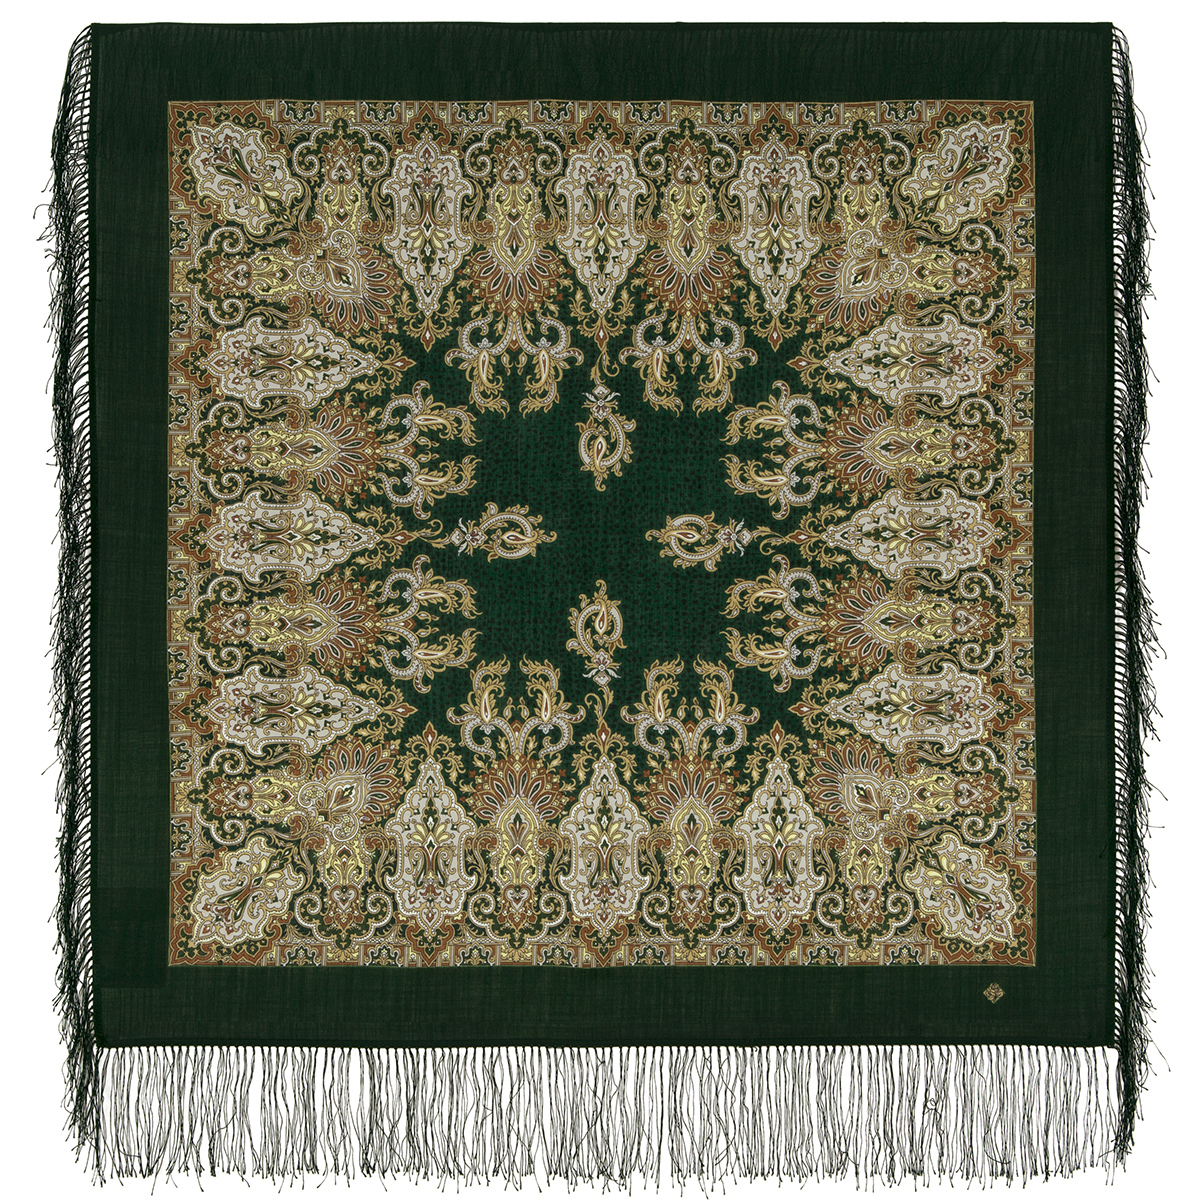 Платок женский Павловопосадский платок 855 темно-зеленый/коричневый/бежевый, 89х89 см